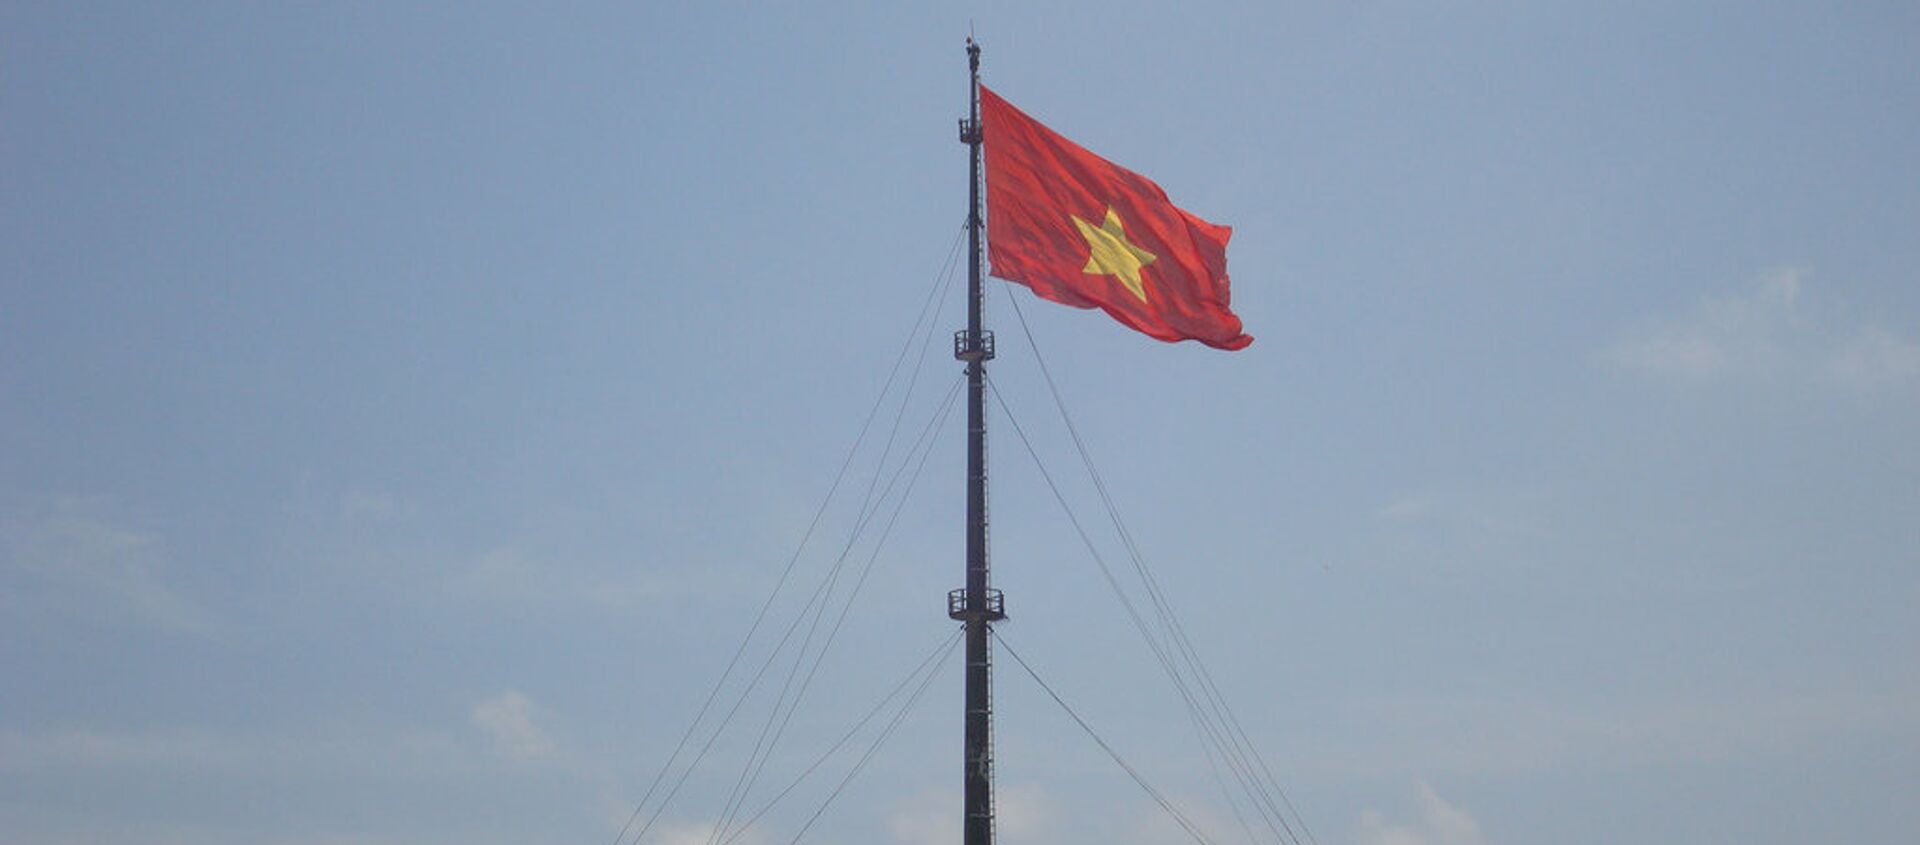 Quốc kỳ Việt Nam - Sputnik Việt Nam, 1920, 21.04.2015